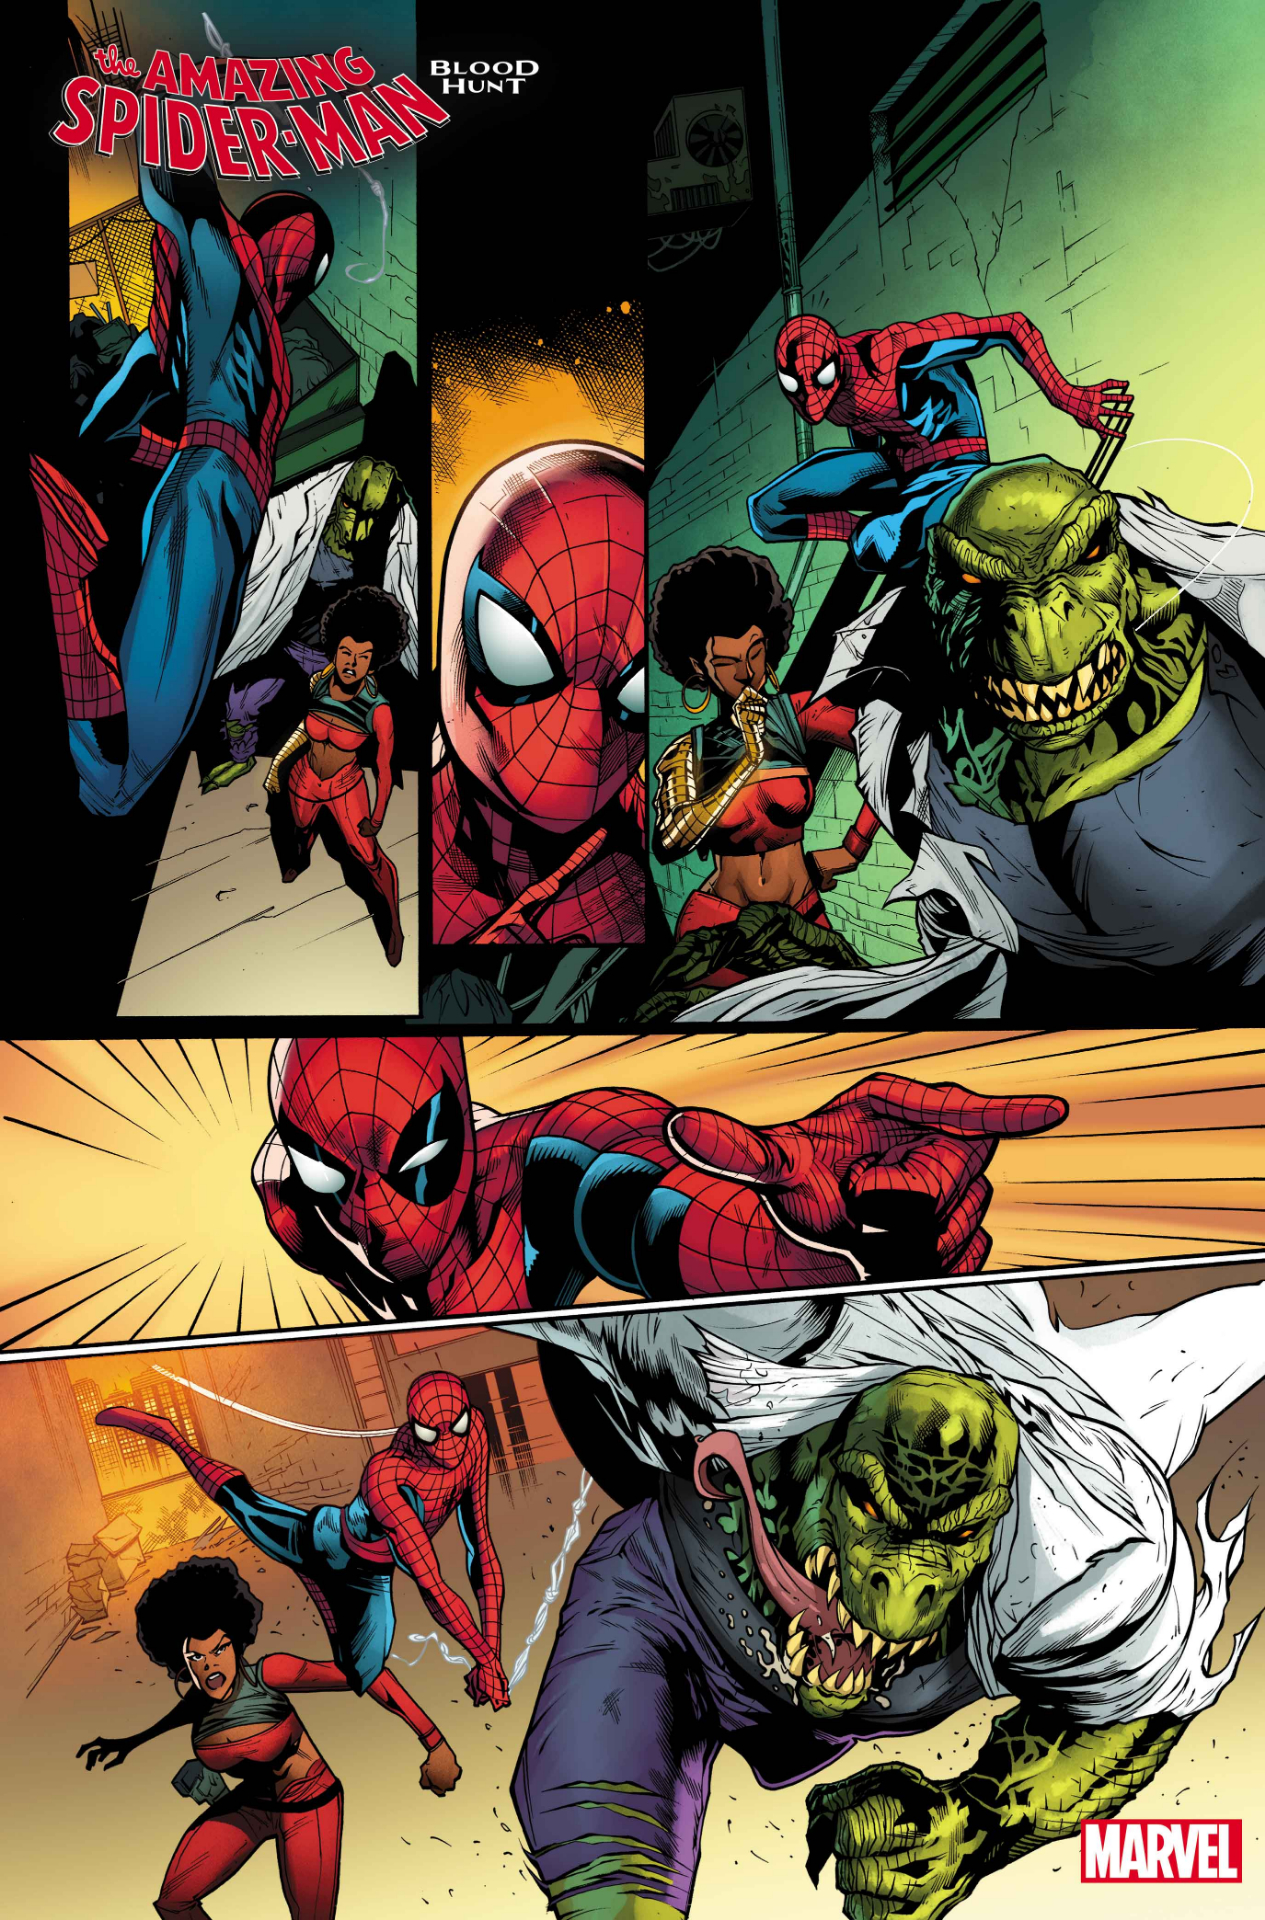 Amazing Spider-Man: Caccia di sangue #1